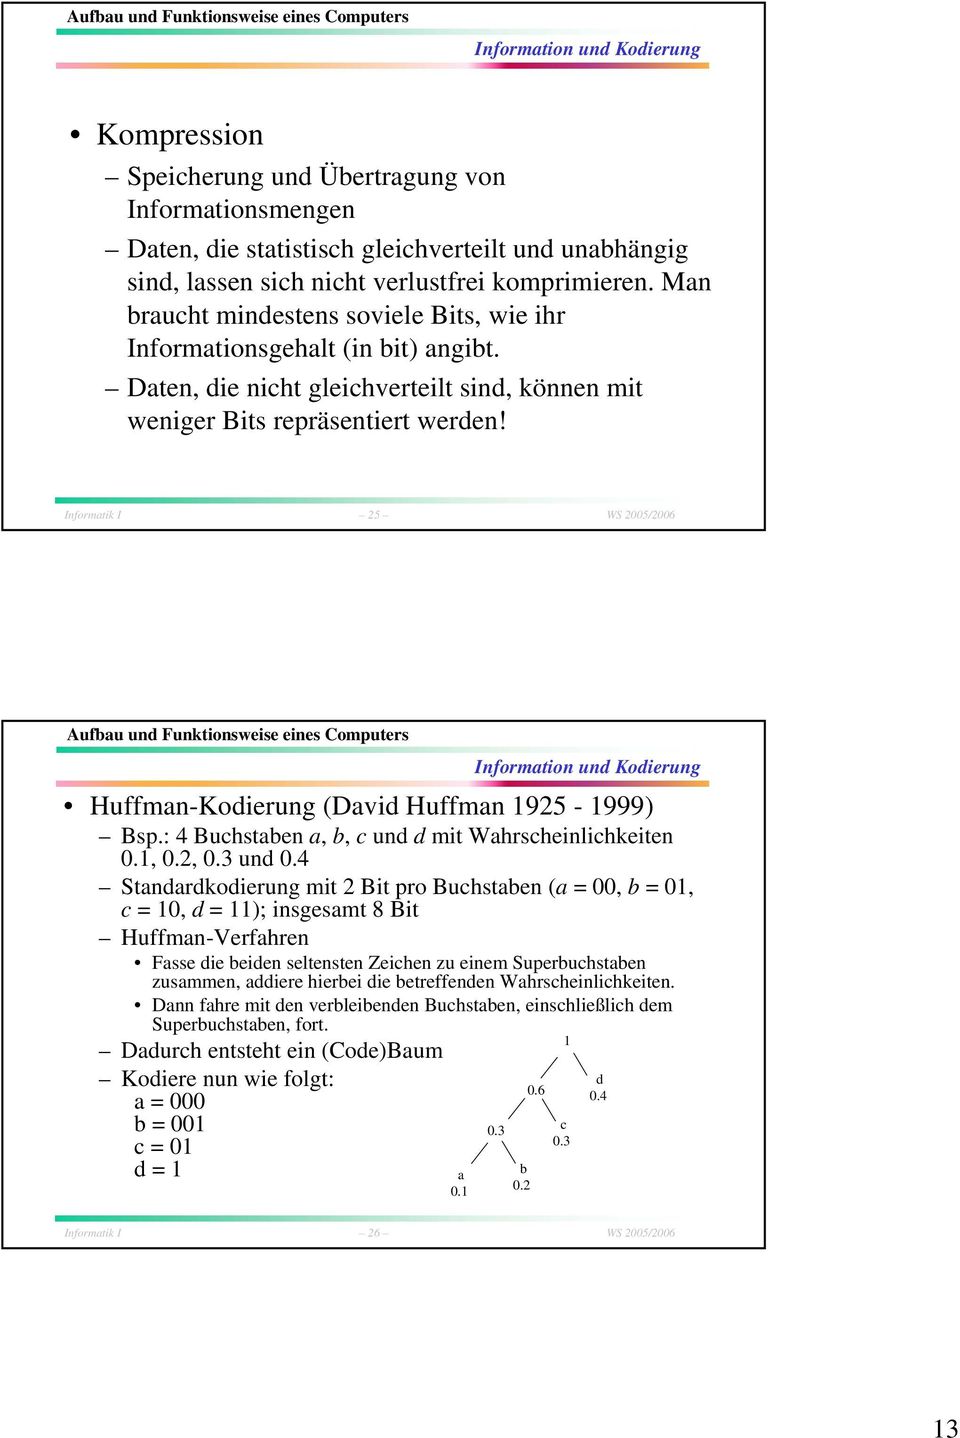 Informatik I 25 WS 2005/2006 Huffman-Kodierung (David Huffman 1925-1999) Bsp.: 4 Buchstaben a, b, c und d mit Wahrscheinlichkeiten 0.1, 0.2, 0.3 und 0.